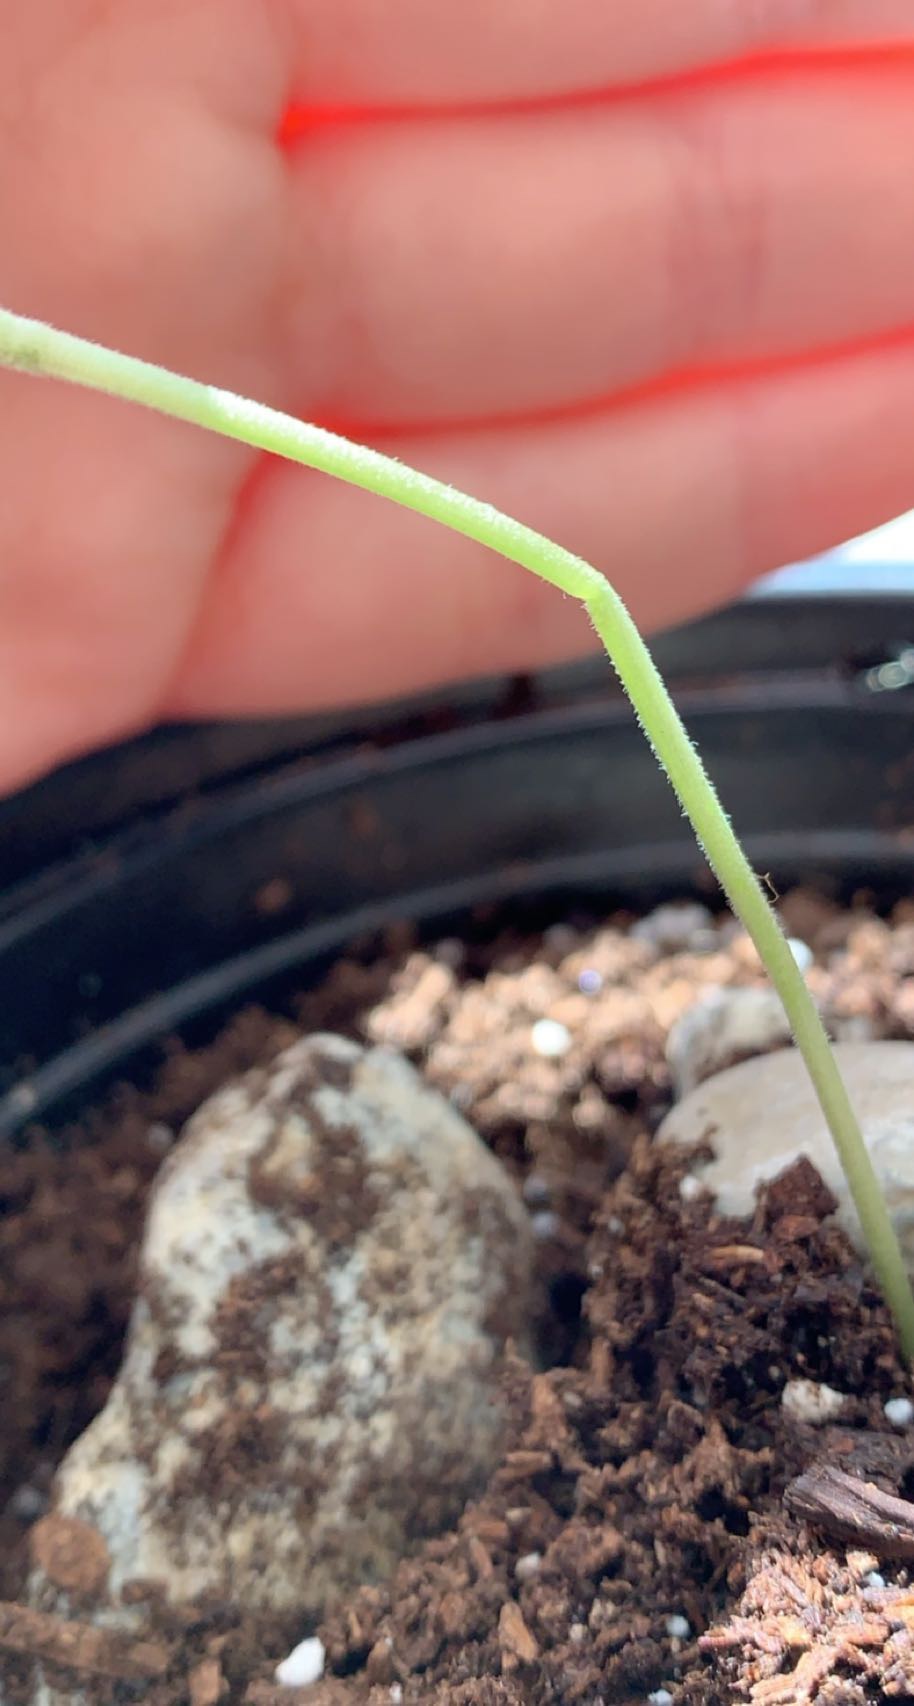 Bent 6 day old seedling stem 2